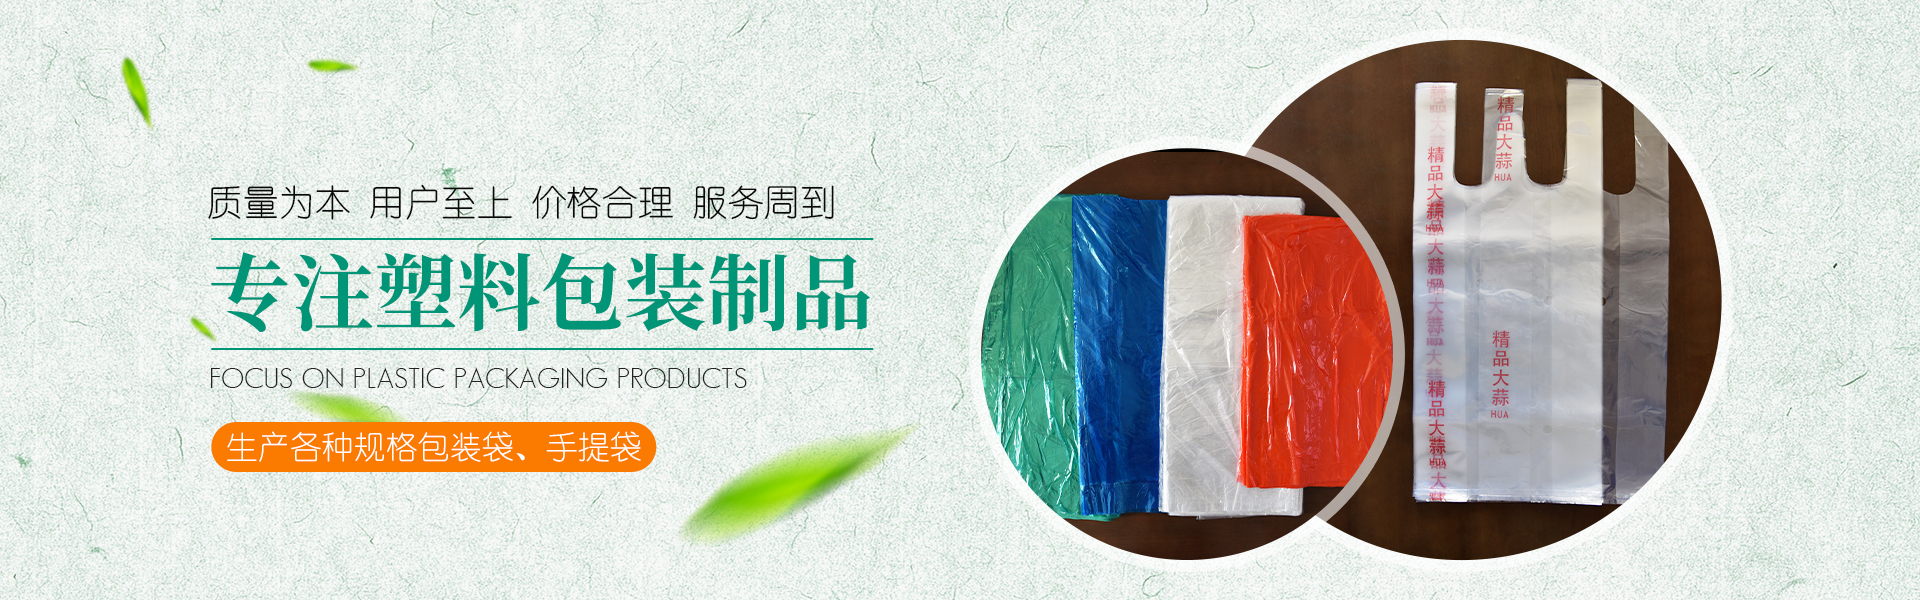 青州[Zhōu]市金海源塑料包裝制品有限公司